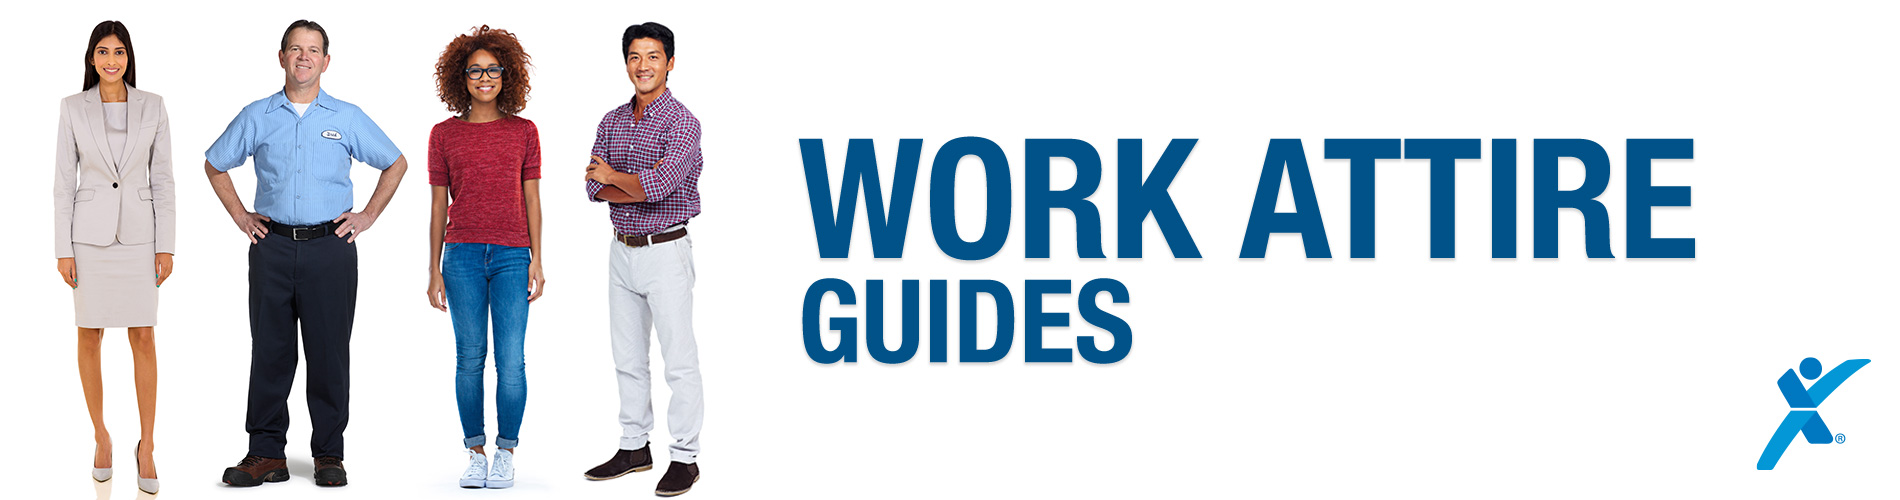 Work Attire Guide